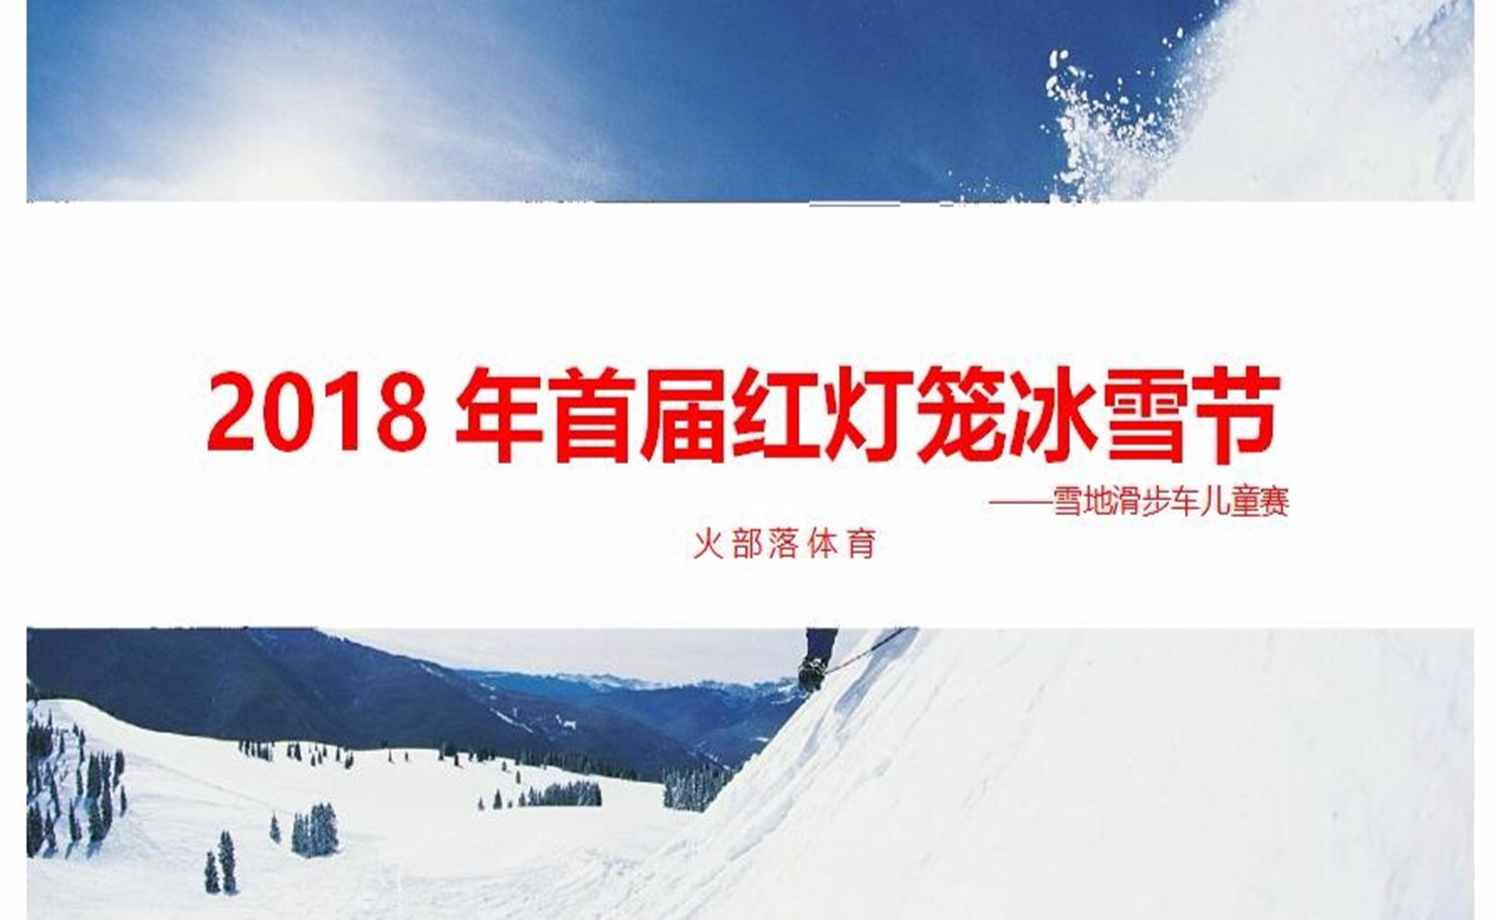 2018年首届红灯笼冰雪节 ——雪地滑步车儿童赛